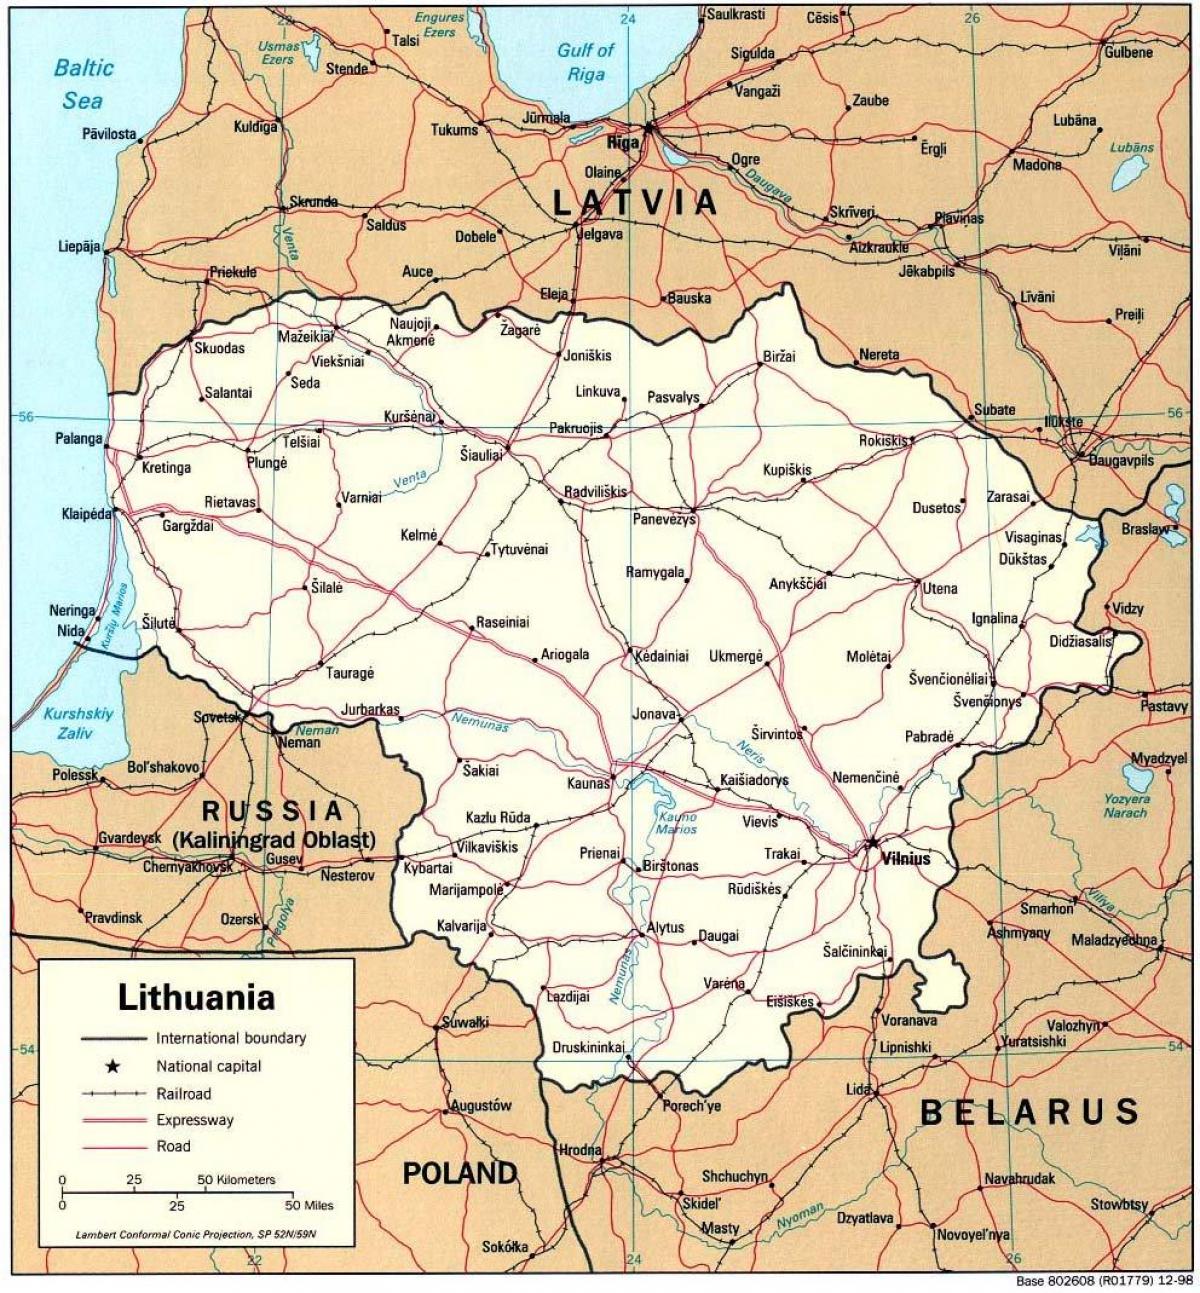 la mappa mostra la Lituania